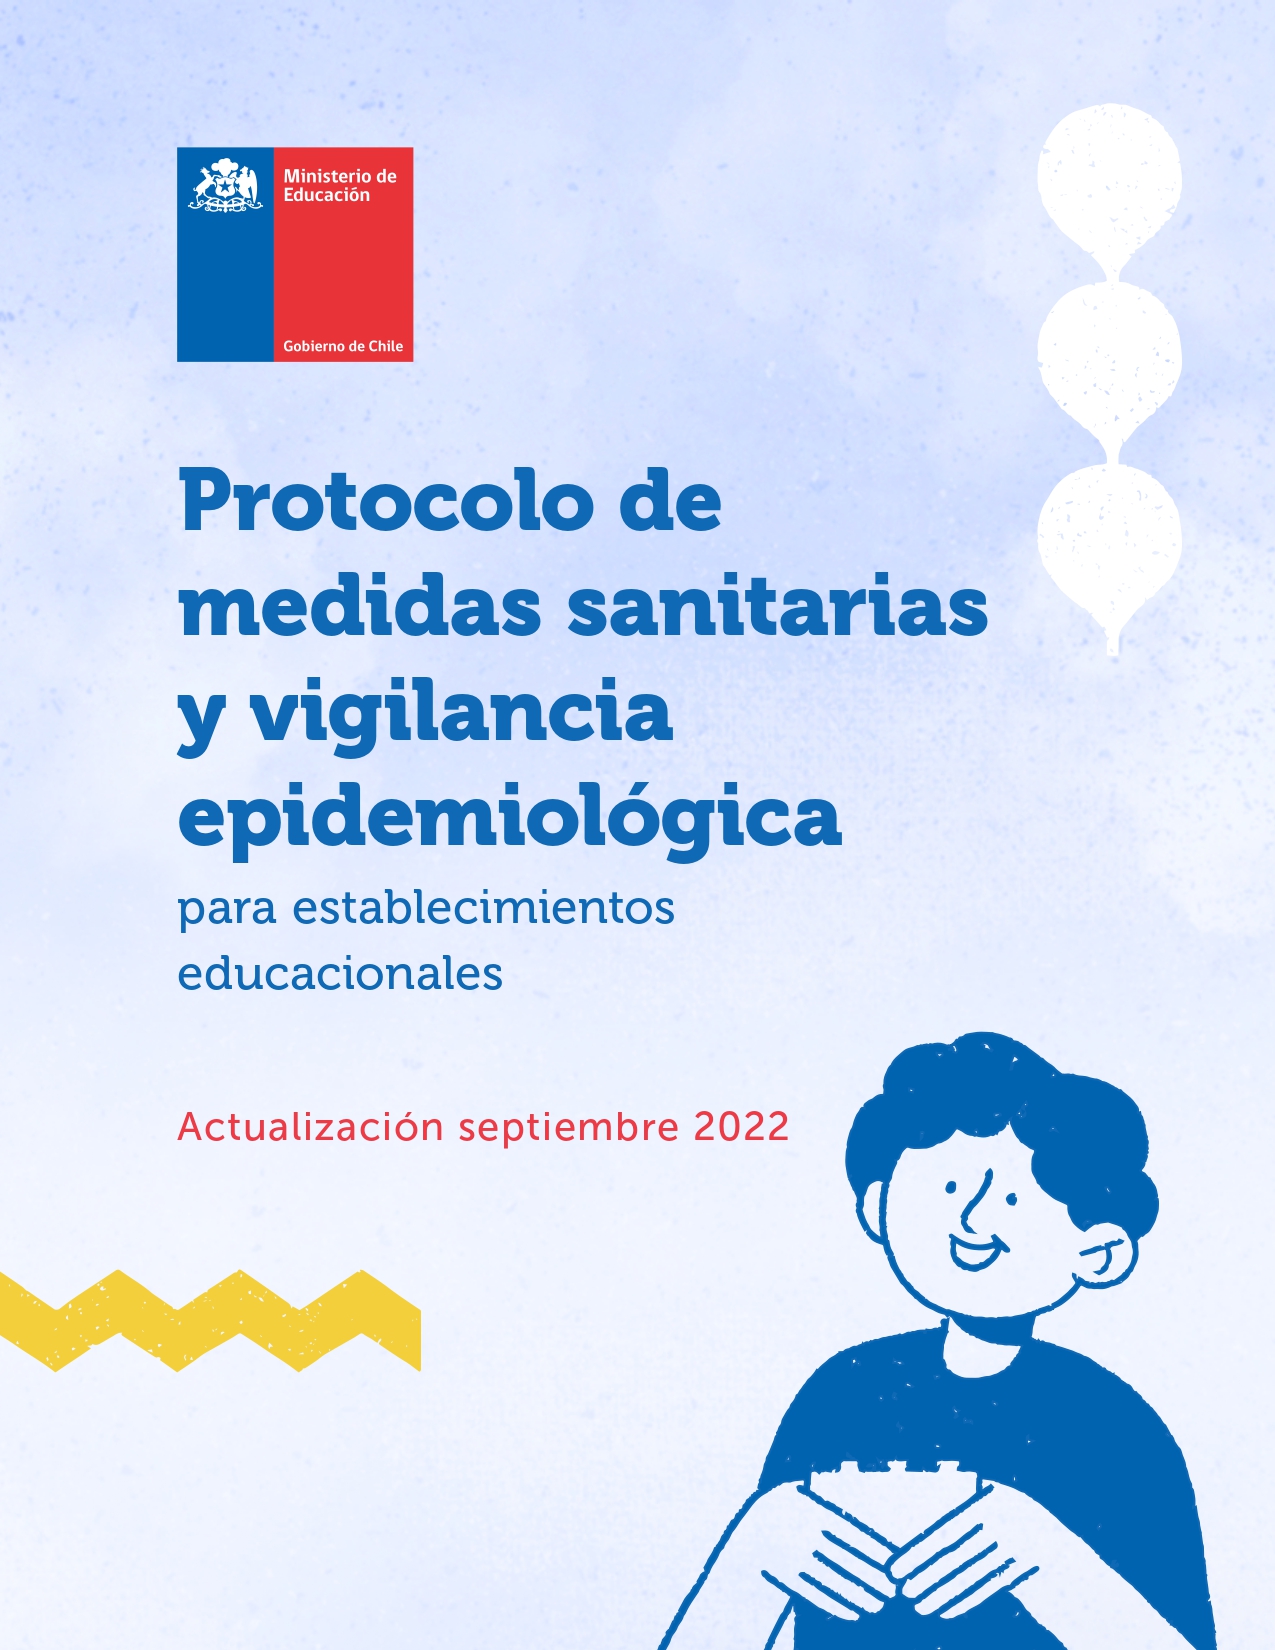 PROTOCOLO DE MEDIDAS SANITARIAS Y VIGILANCIA EPIDEMIOLÓGICA (1 10 22) page 0001